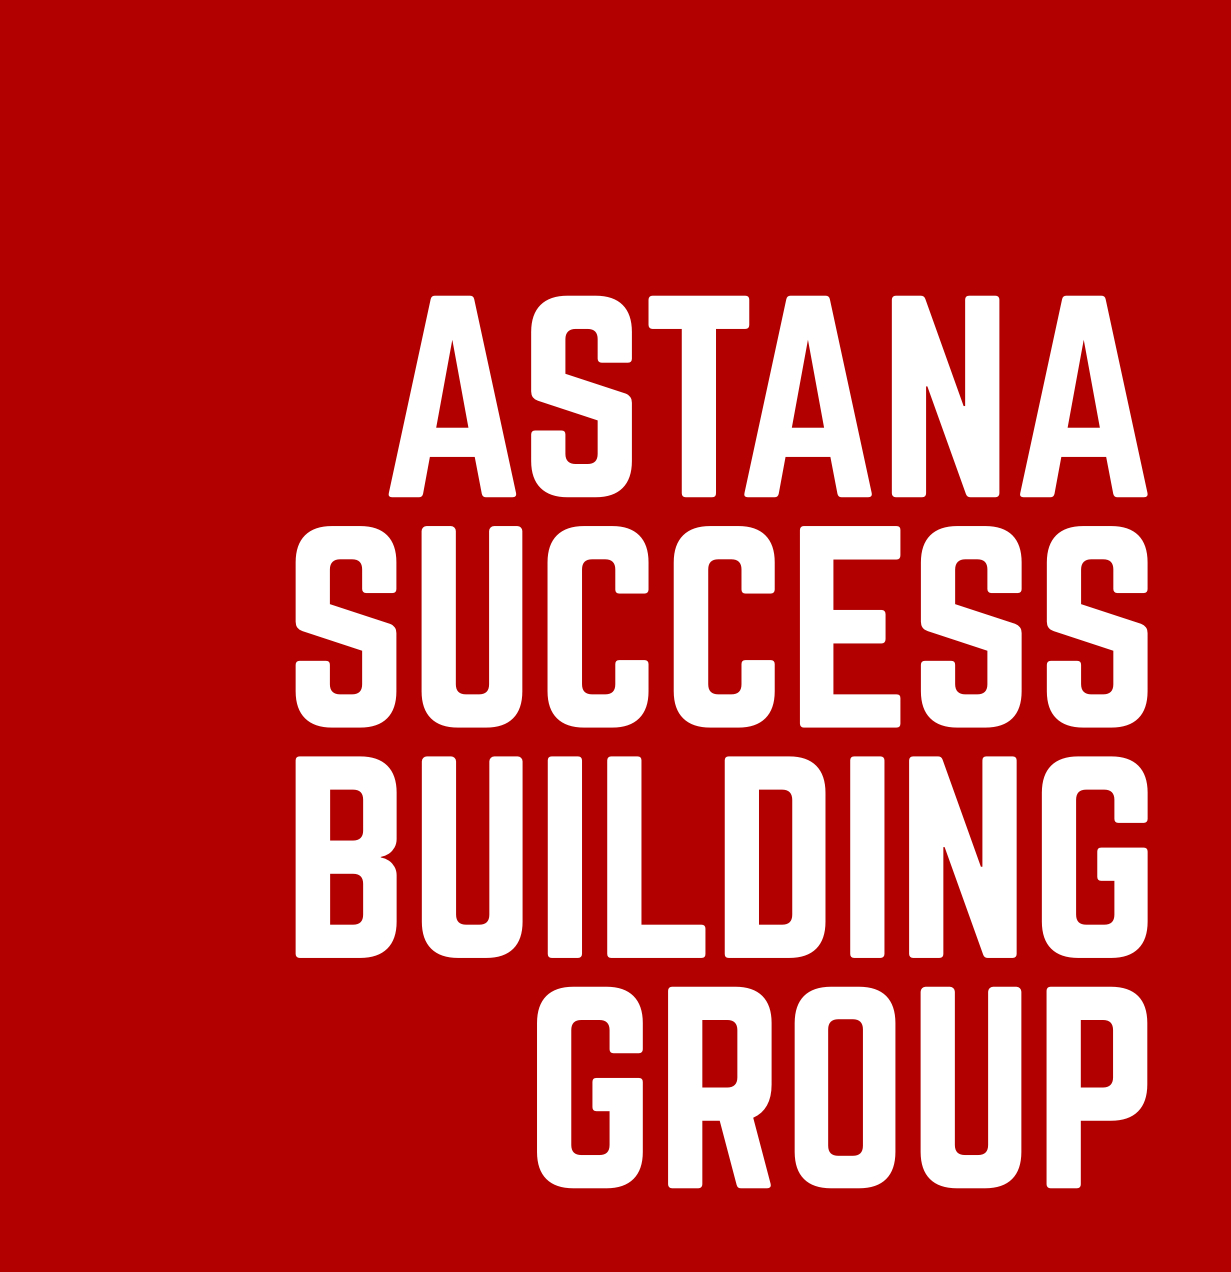 Astana Success Building Group